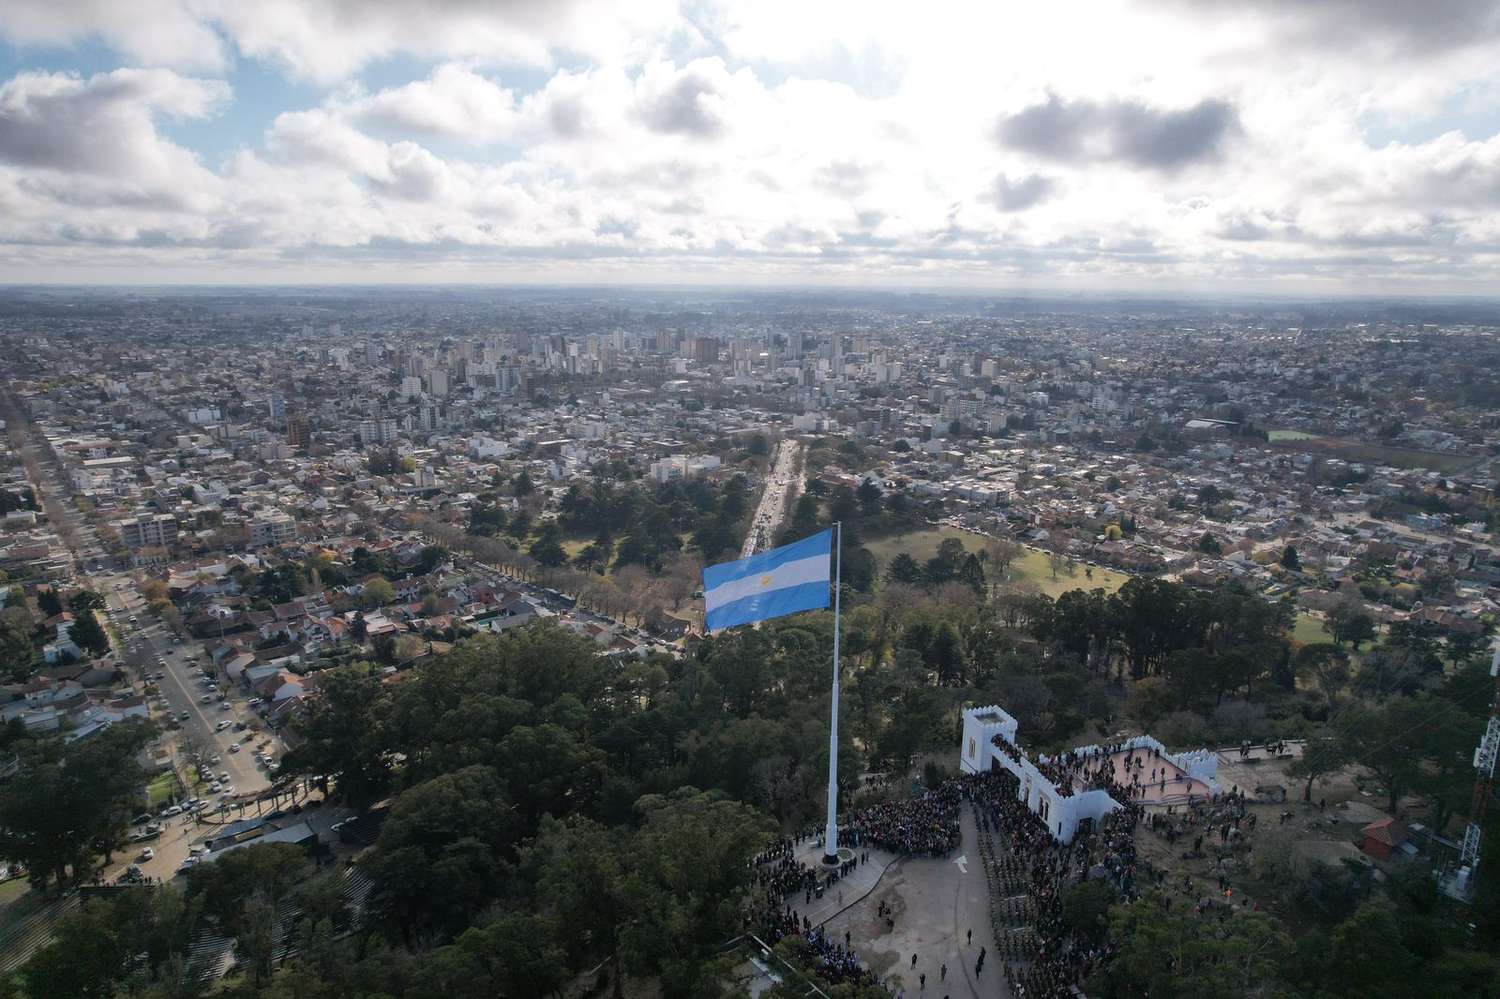 ¿Cuánto mide la bandera izada en la cima del Parque Independencia?